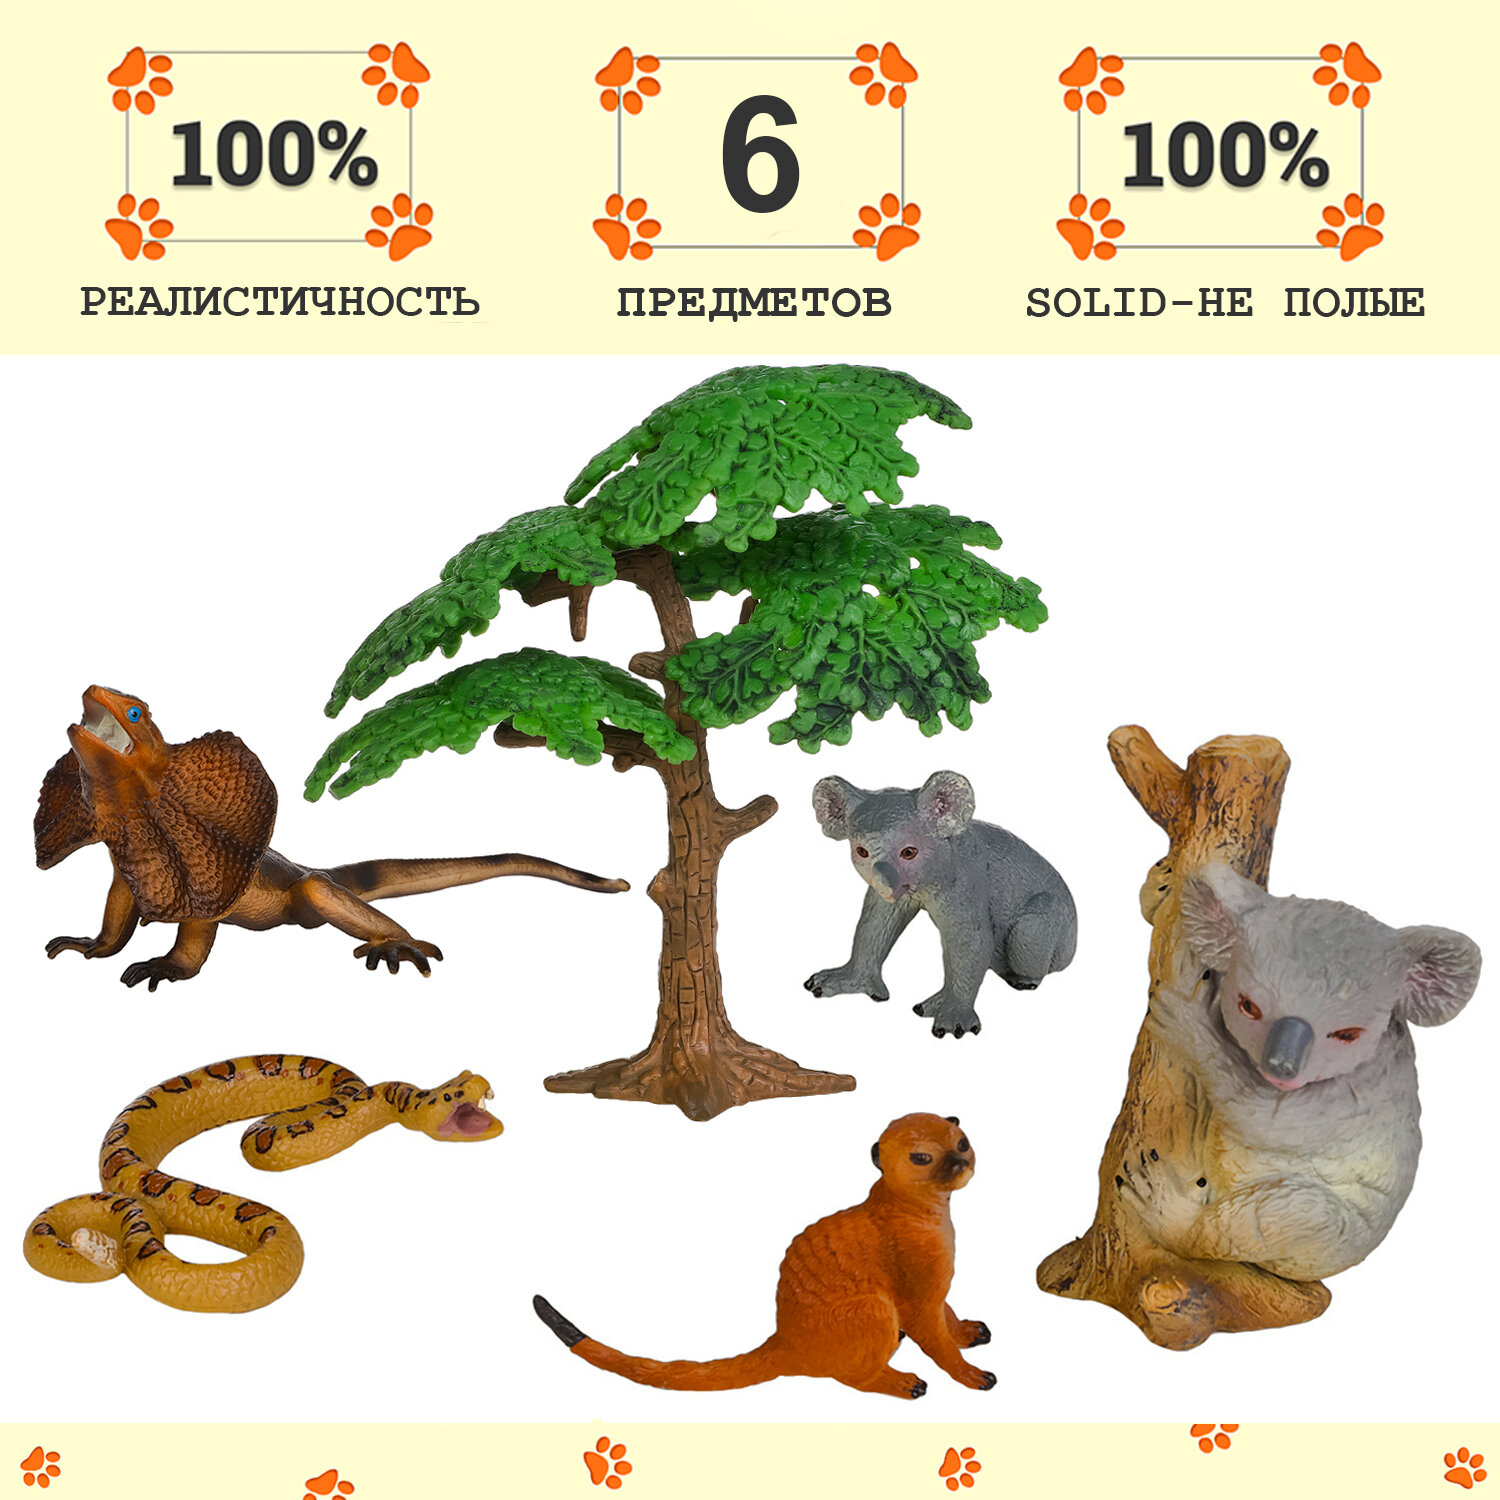 Набор фигурок животных серии "Мир диких животных": 2 коалы, сурикат, ящерица, змея (набор из 6 предметов)